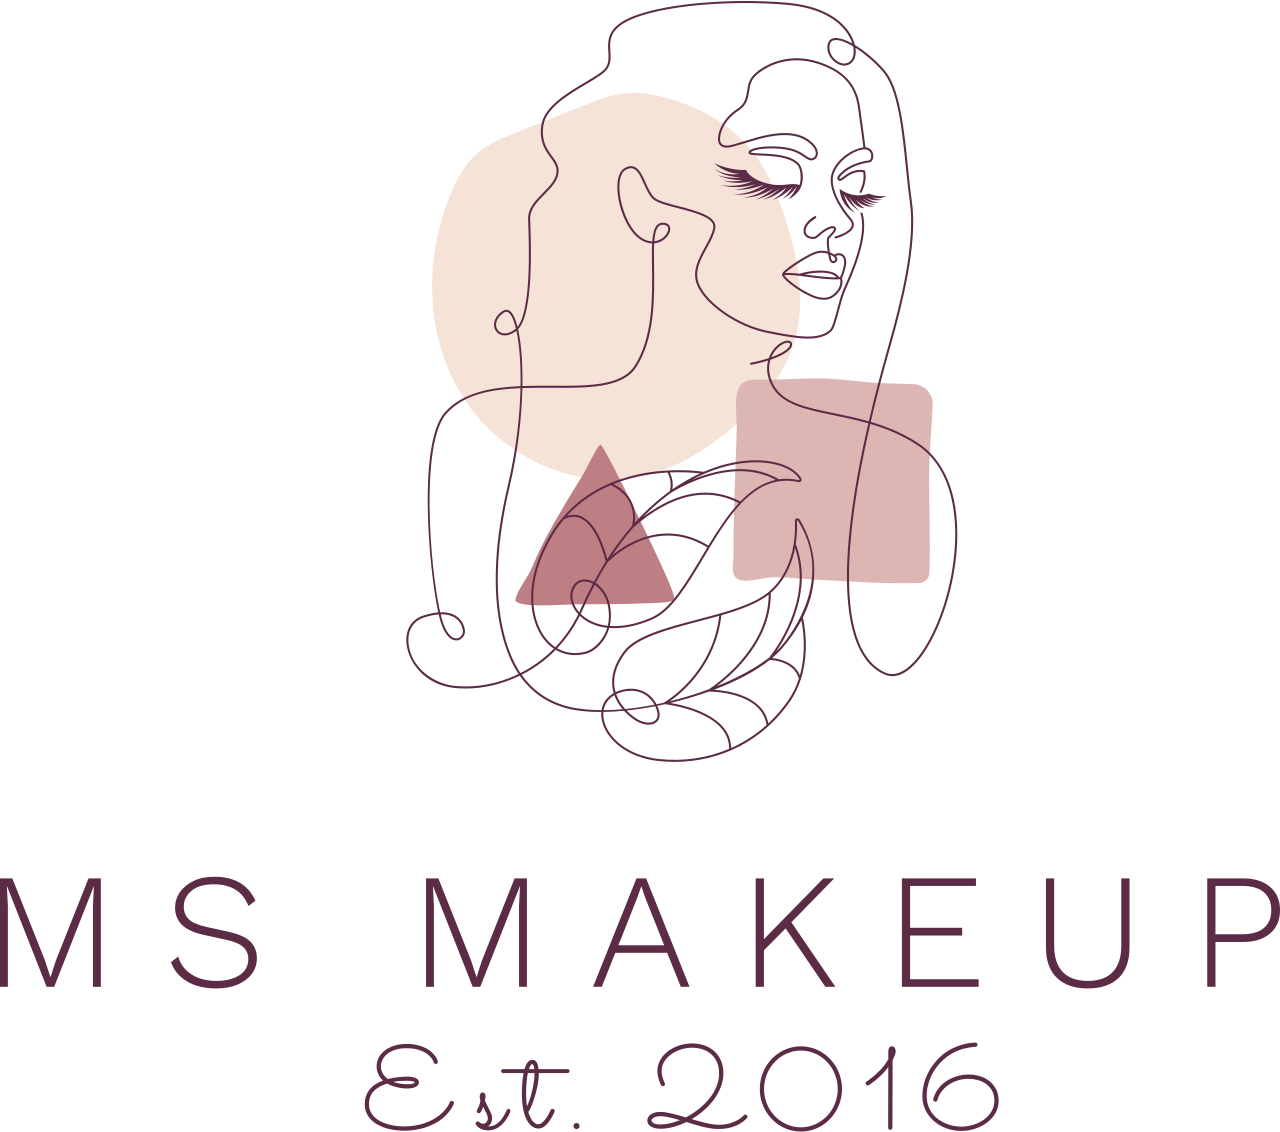 MS Makeup 's logo